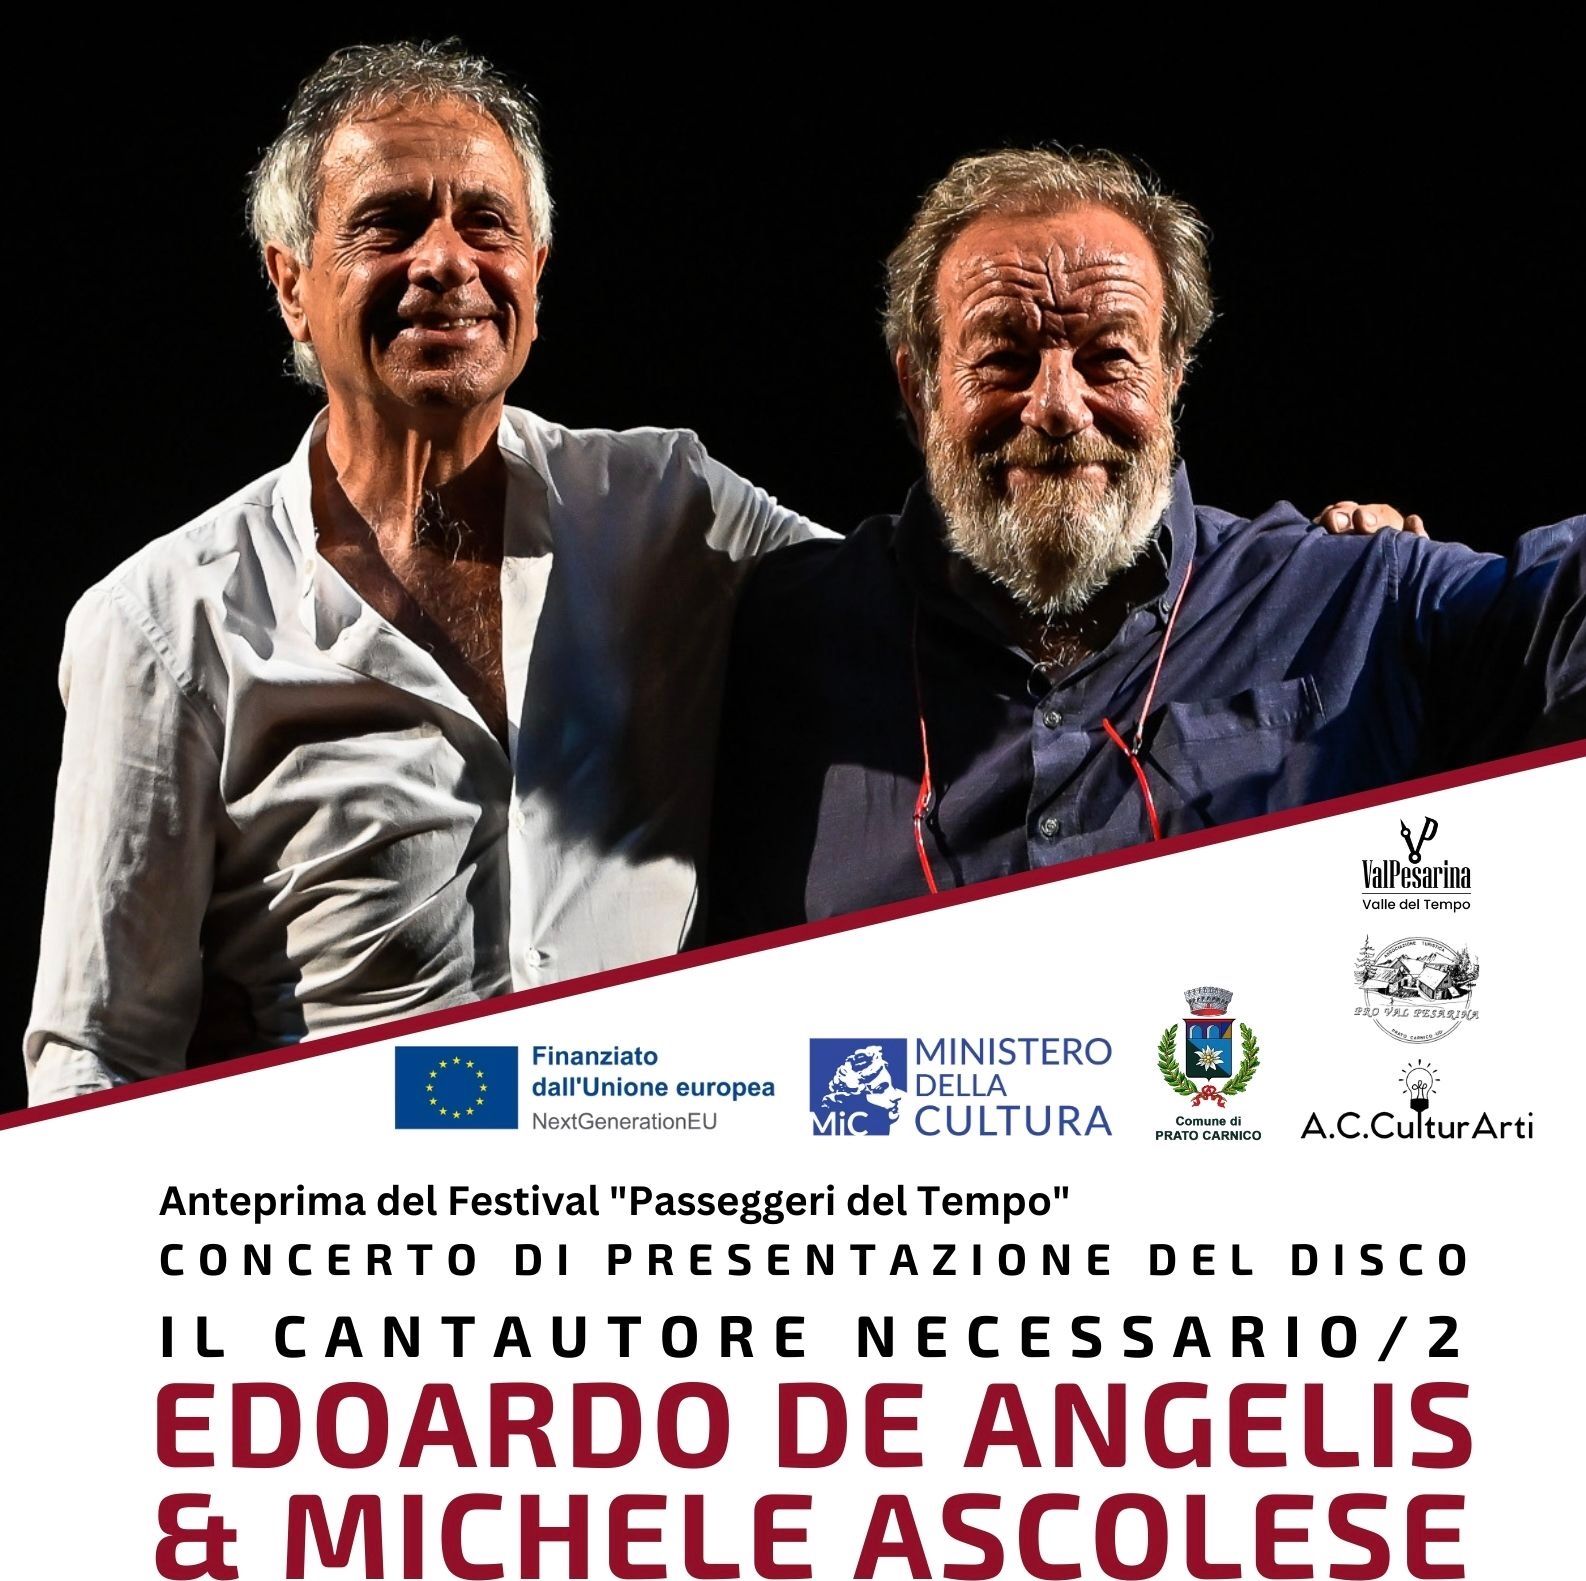 IL CANTAUTORE NECESSARIO/2 Edoardo De Angelis & Michele Ascolese raccontano i grandi cantautori italiani